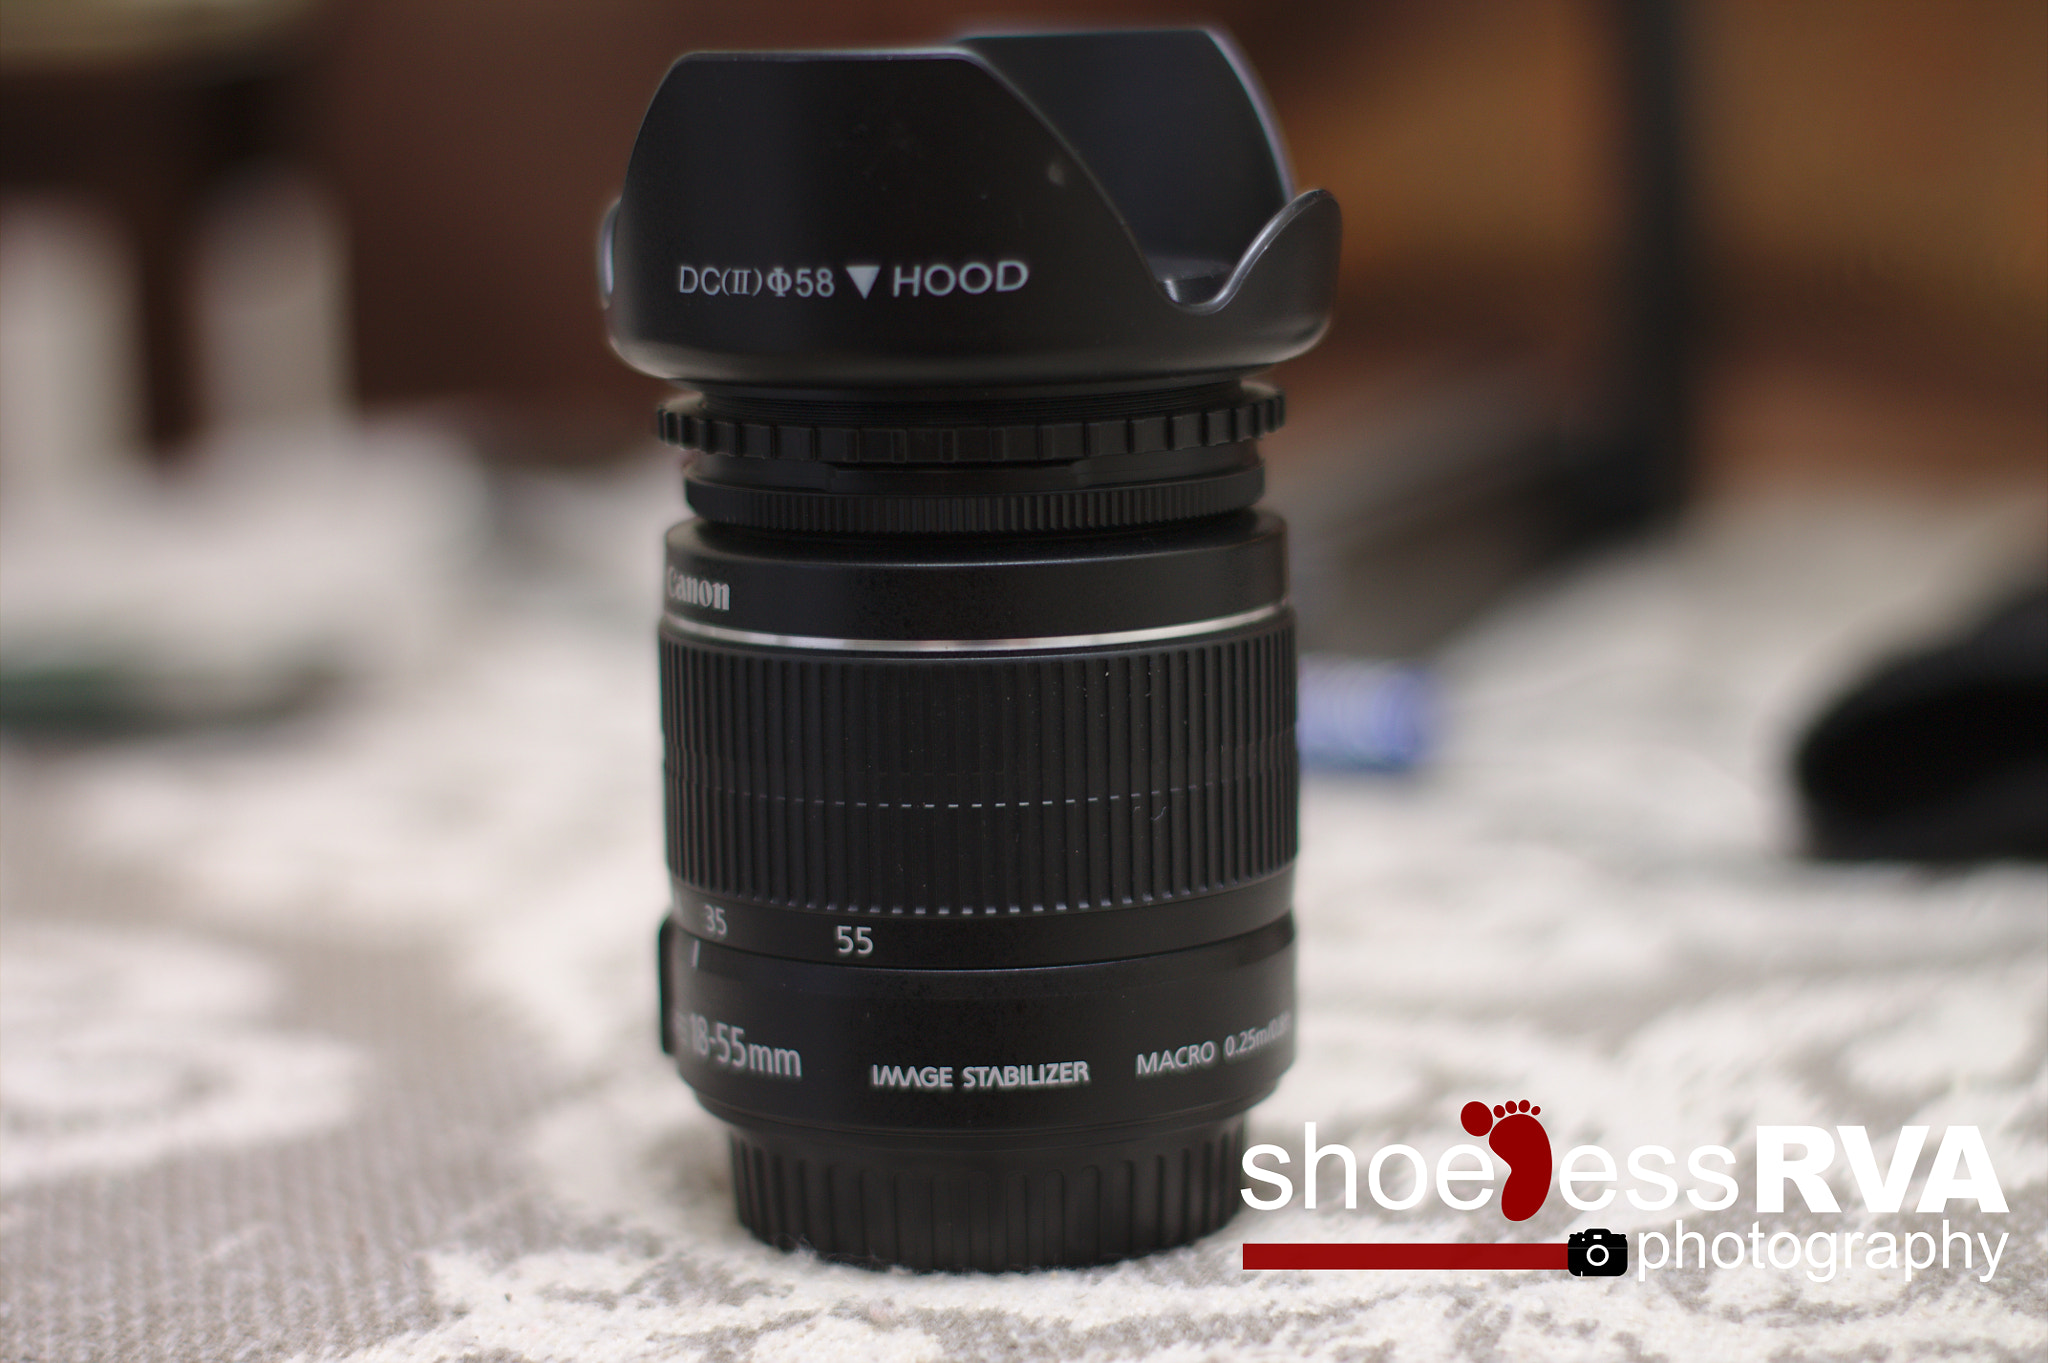 Canon EOS 1100D (EOS Rebel T3 / EOS Kiss X50) + Canon 50mm sample photo. Shooting a lens through a lens... photography